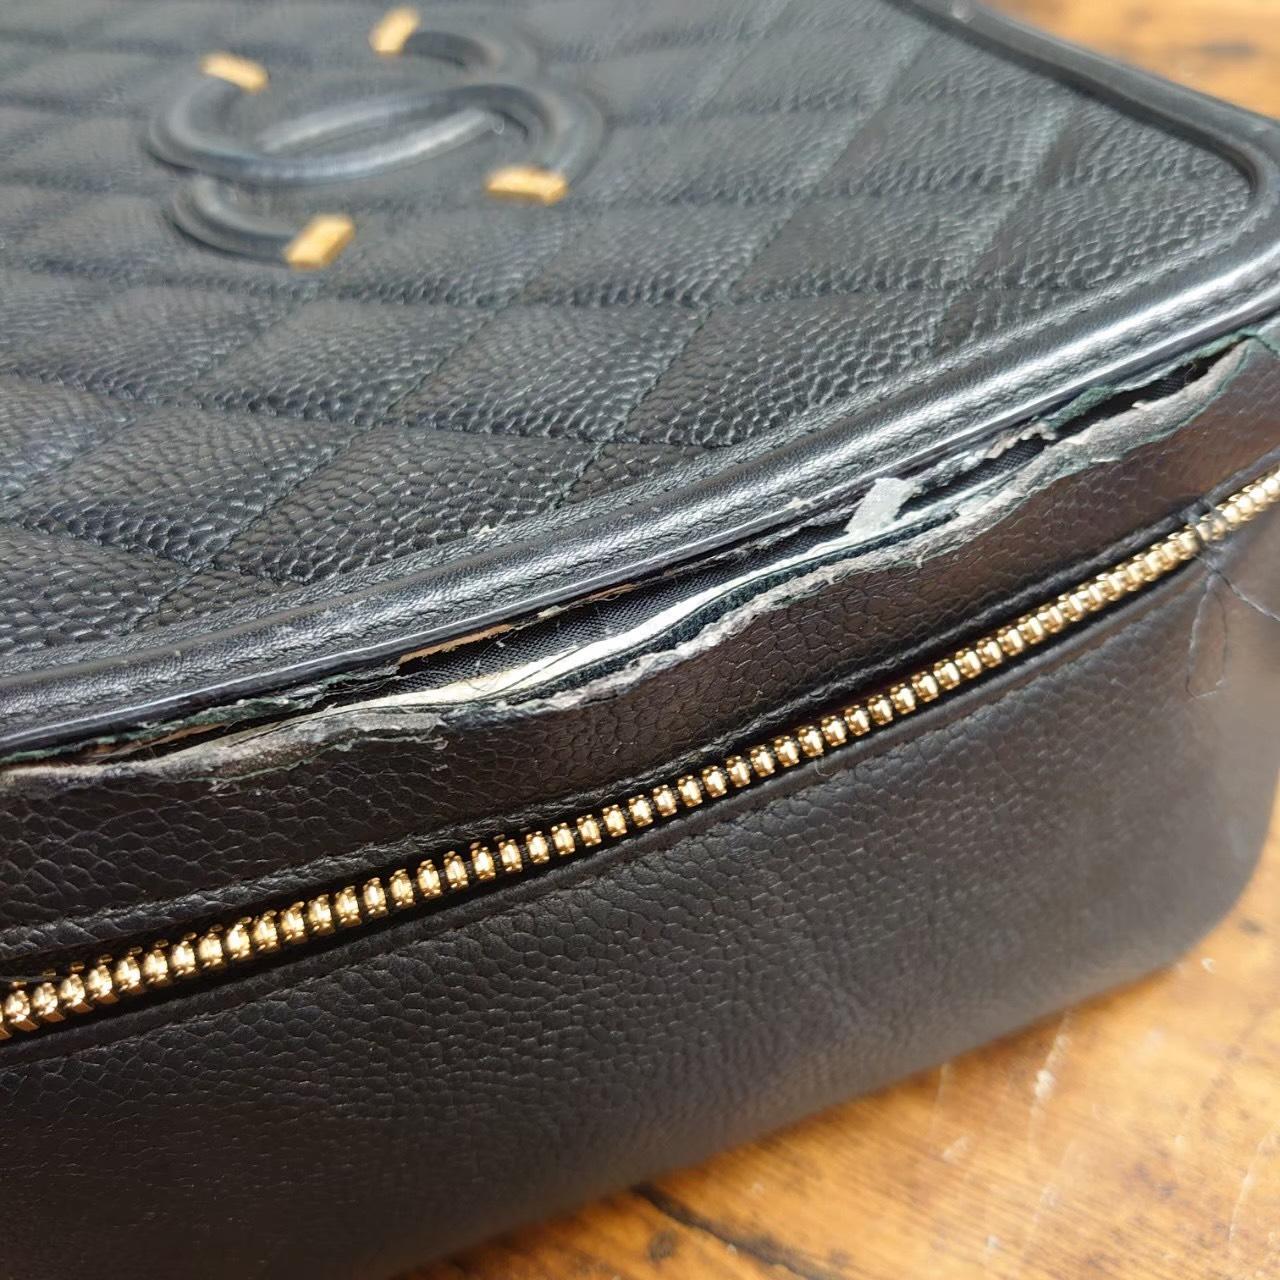 カバン 鞄 バッグ 財布 革 修理 補色 コバ割れ、剥がれの塗り直し